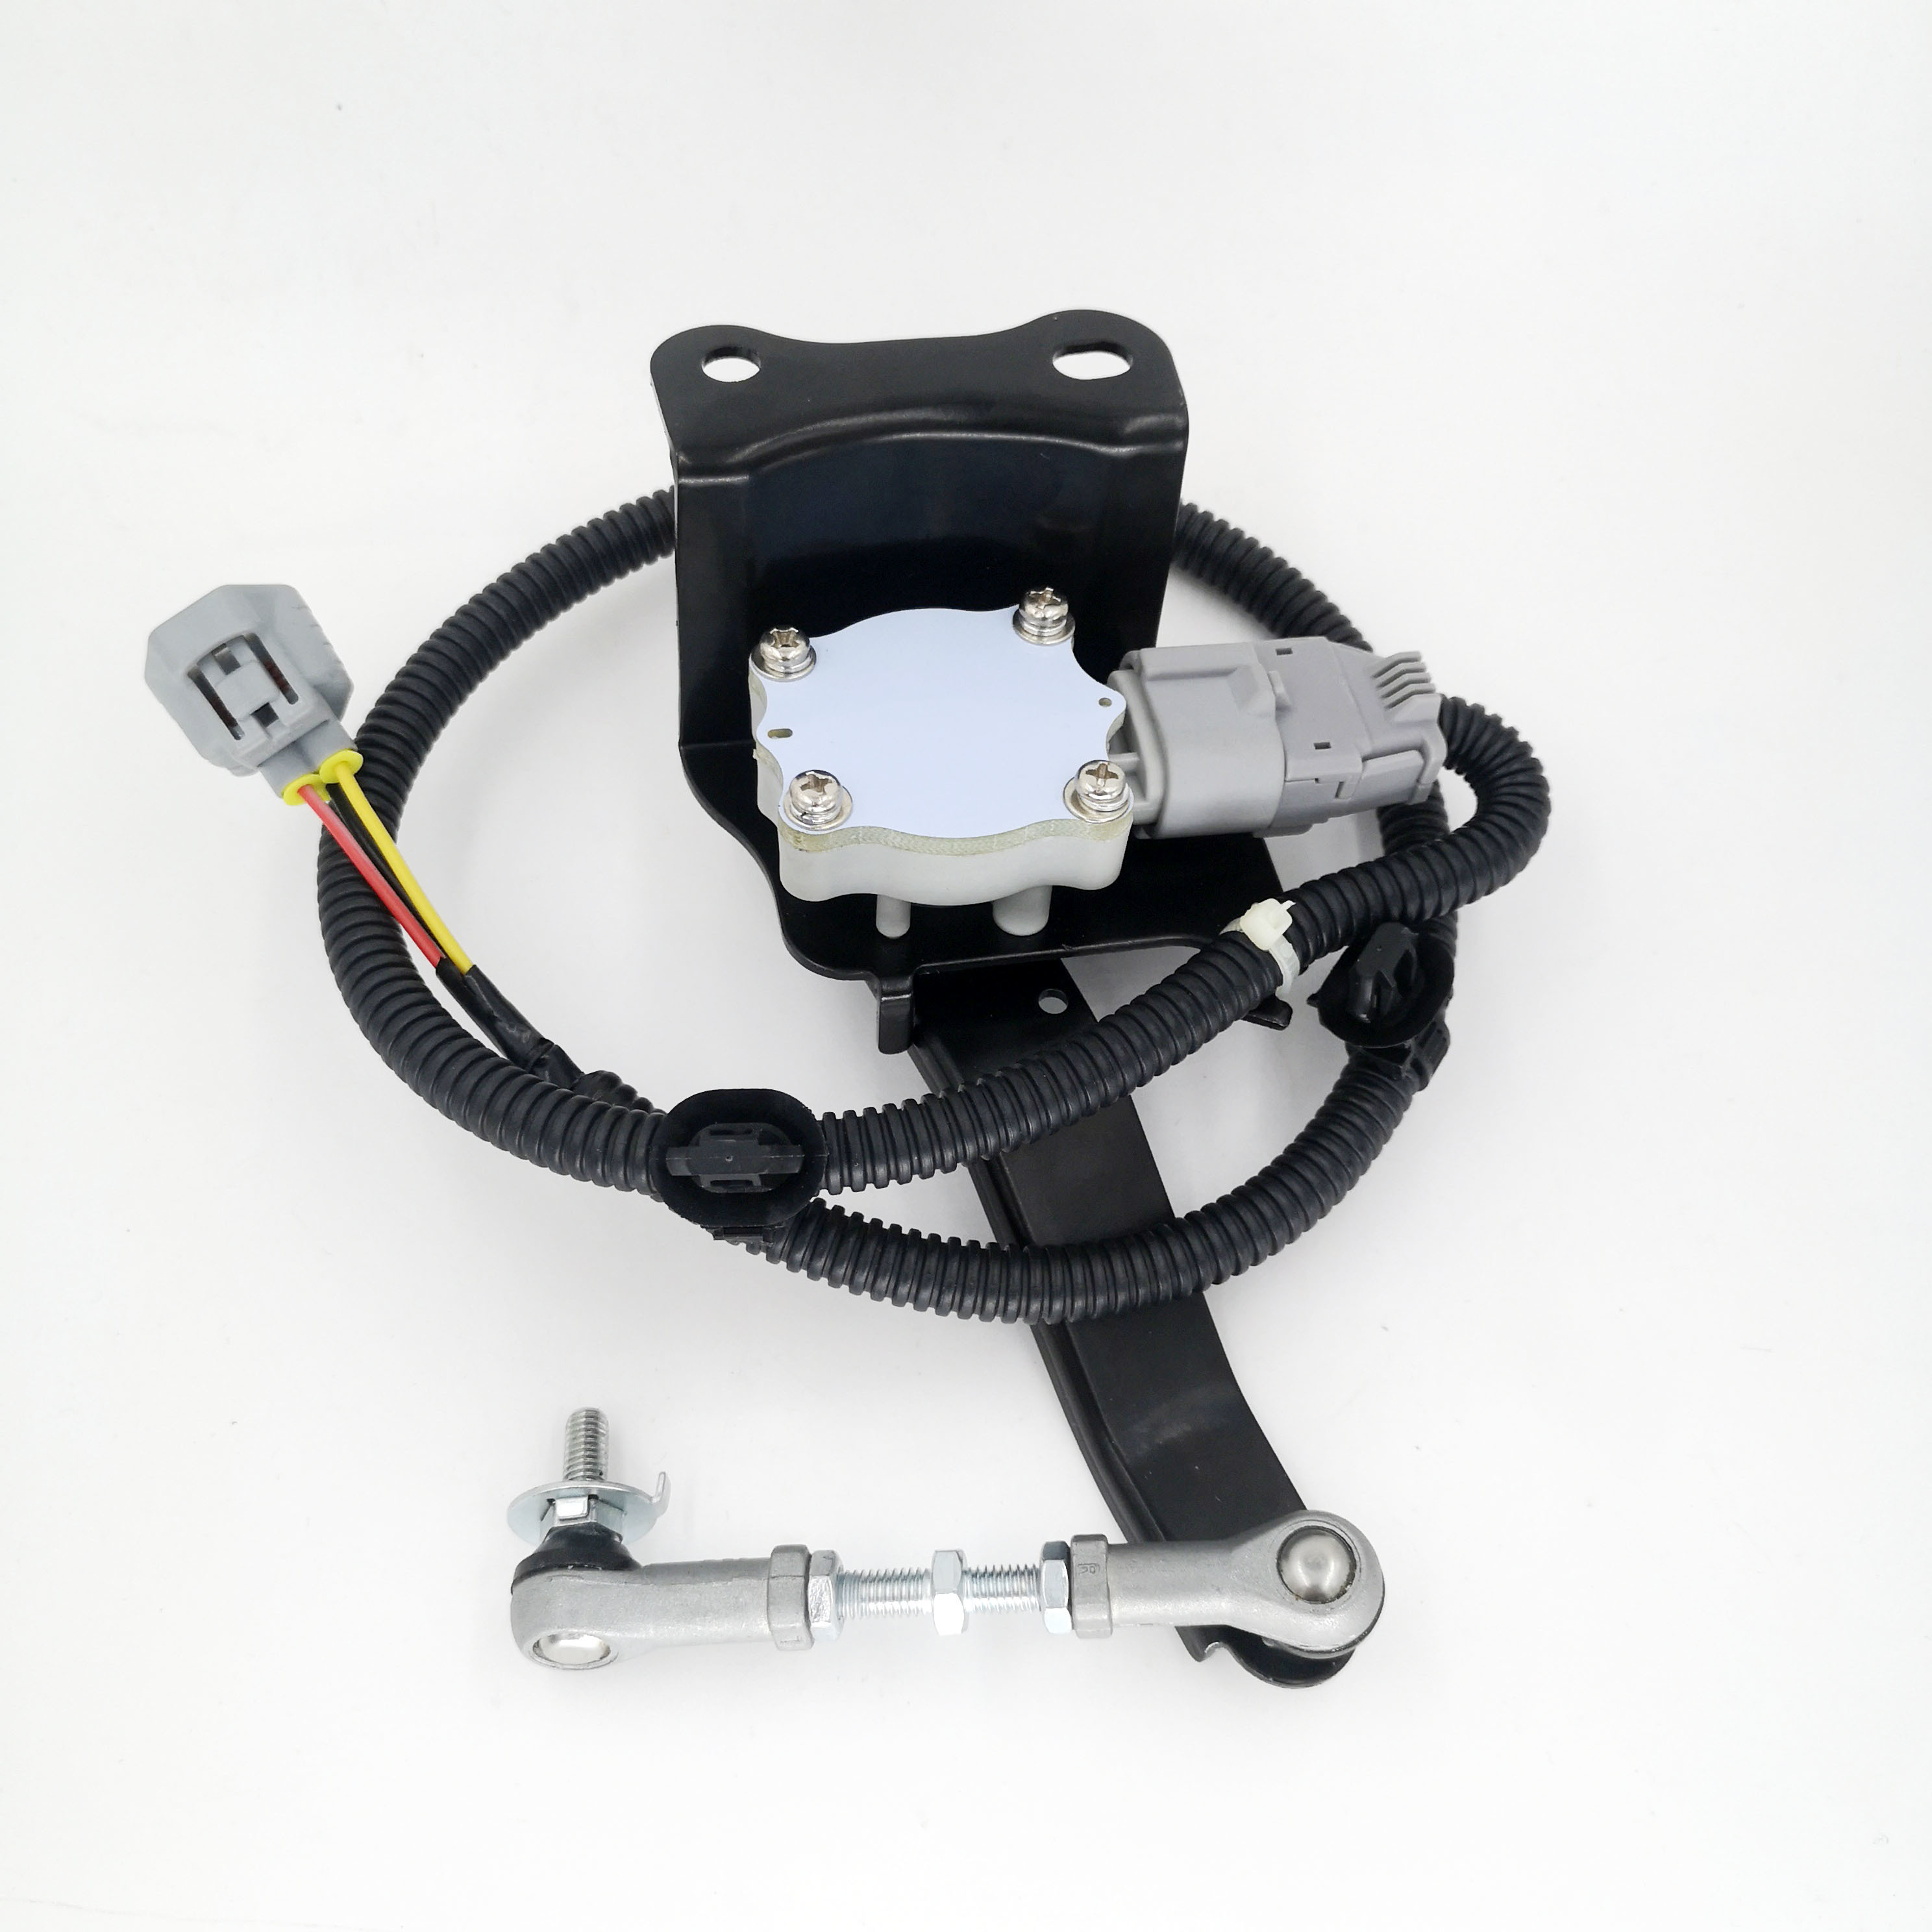 Headlight Level sensor Suspension height sensor for Toyota 89406-60011 89405-60011